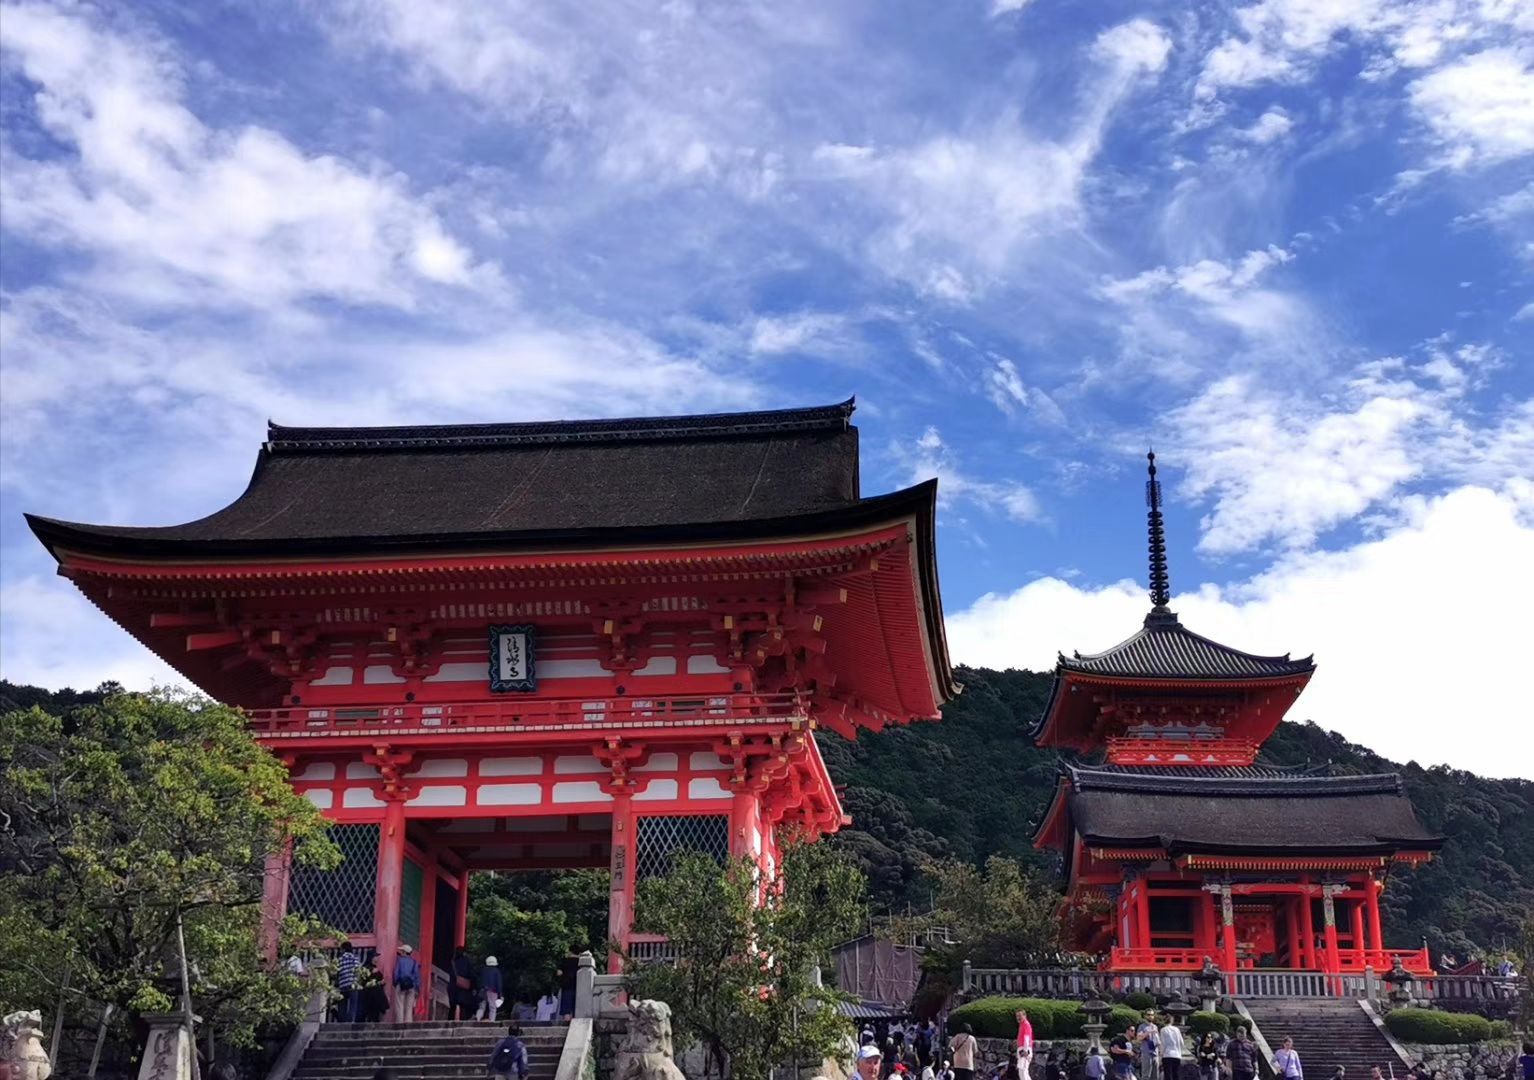 清水寺是京都最古老的寺院之一，为日本平安时代（公元798年左右）建筑物的代表，典型的唐式建筑，后来毁